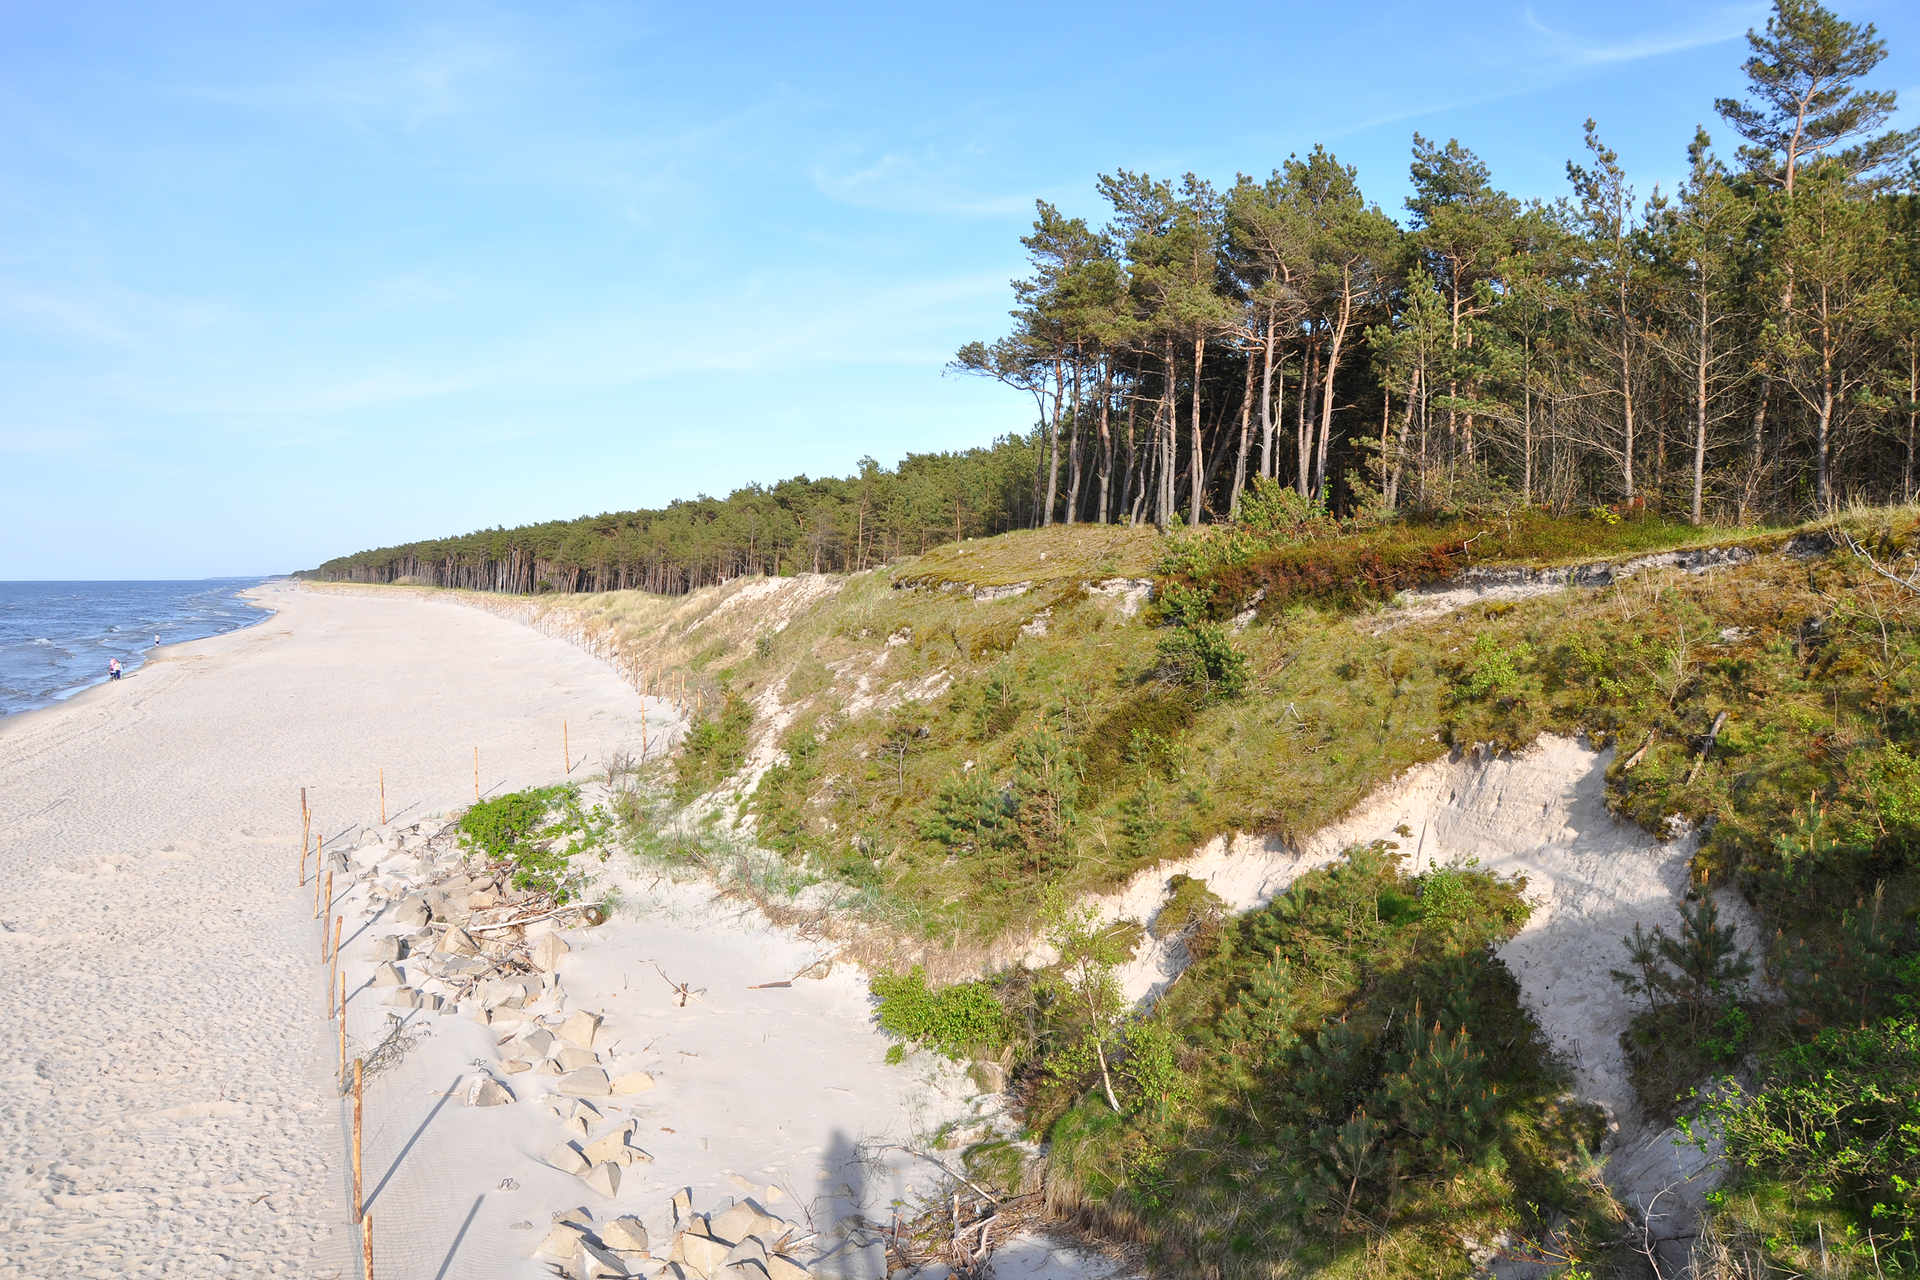 Fotografia prezentuje fragment pobrzeża z plażą oraz klifami. Na klifie rosną liczne drzewa iglaste.